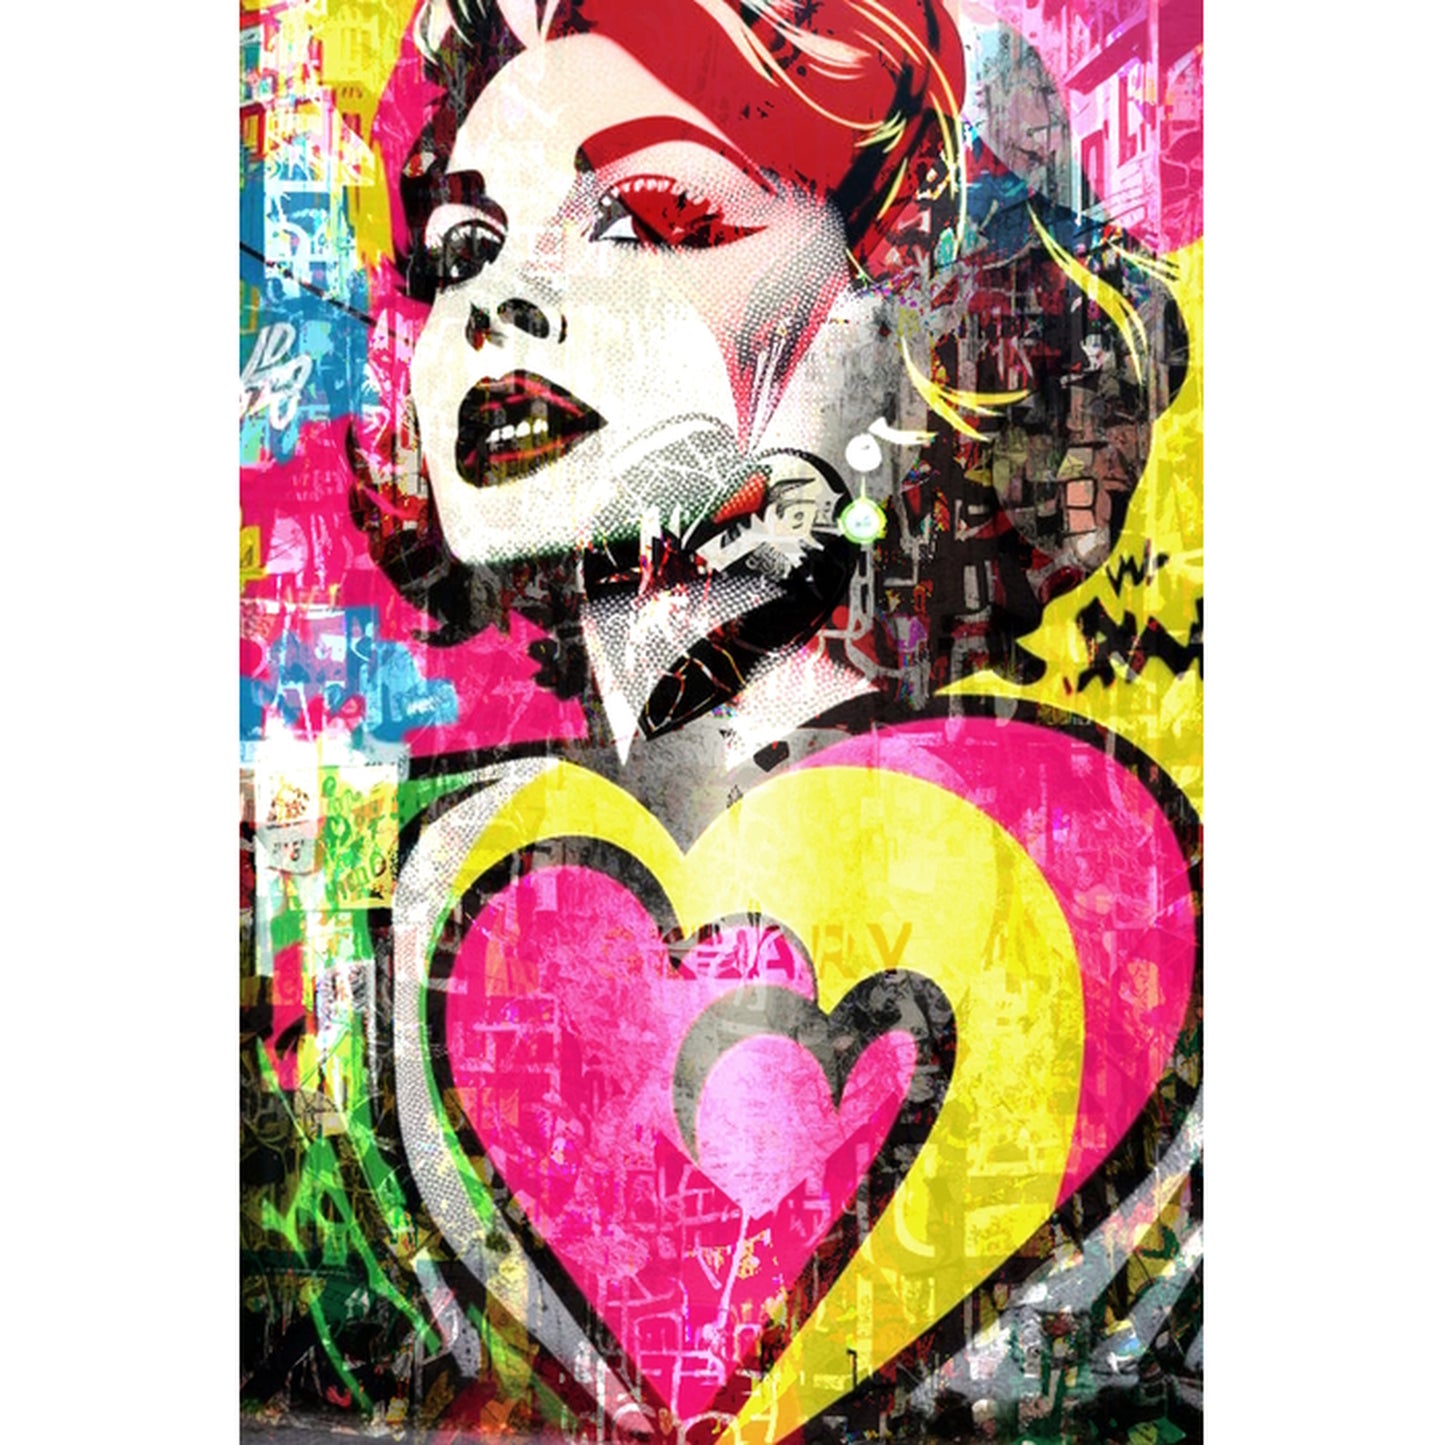 Pop Art Heart Print of a Woman Metal Poster